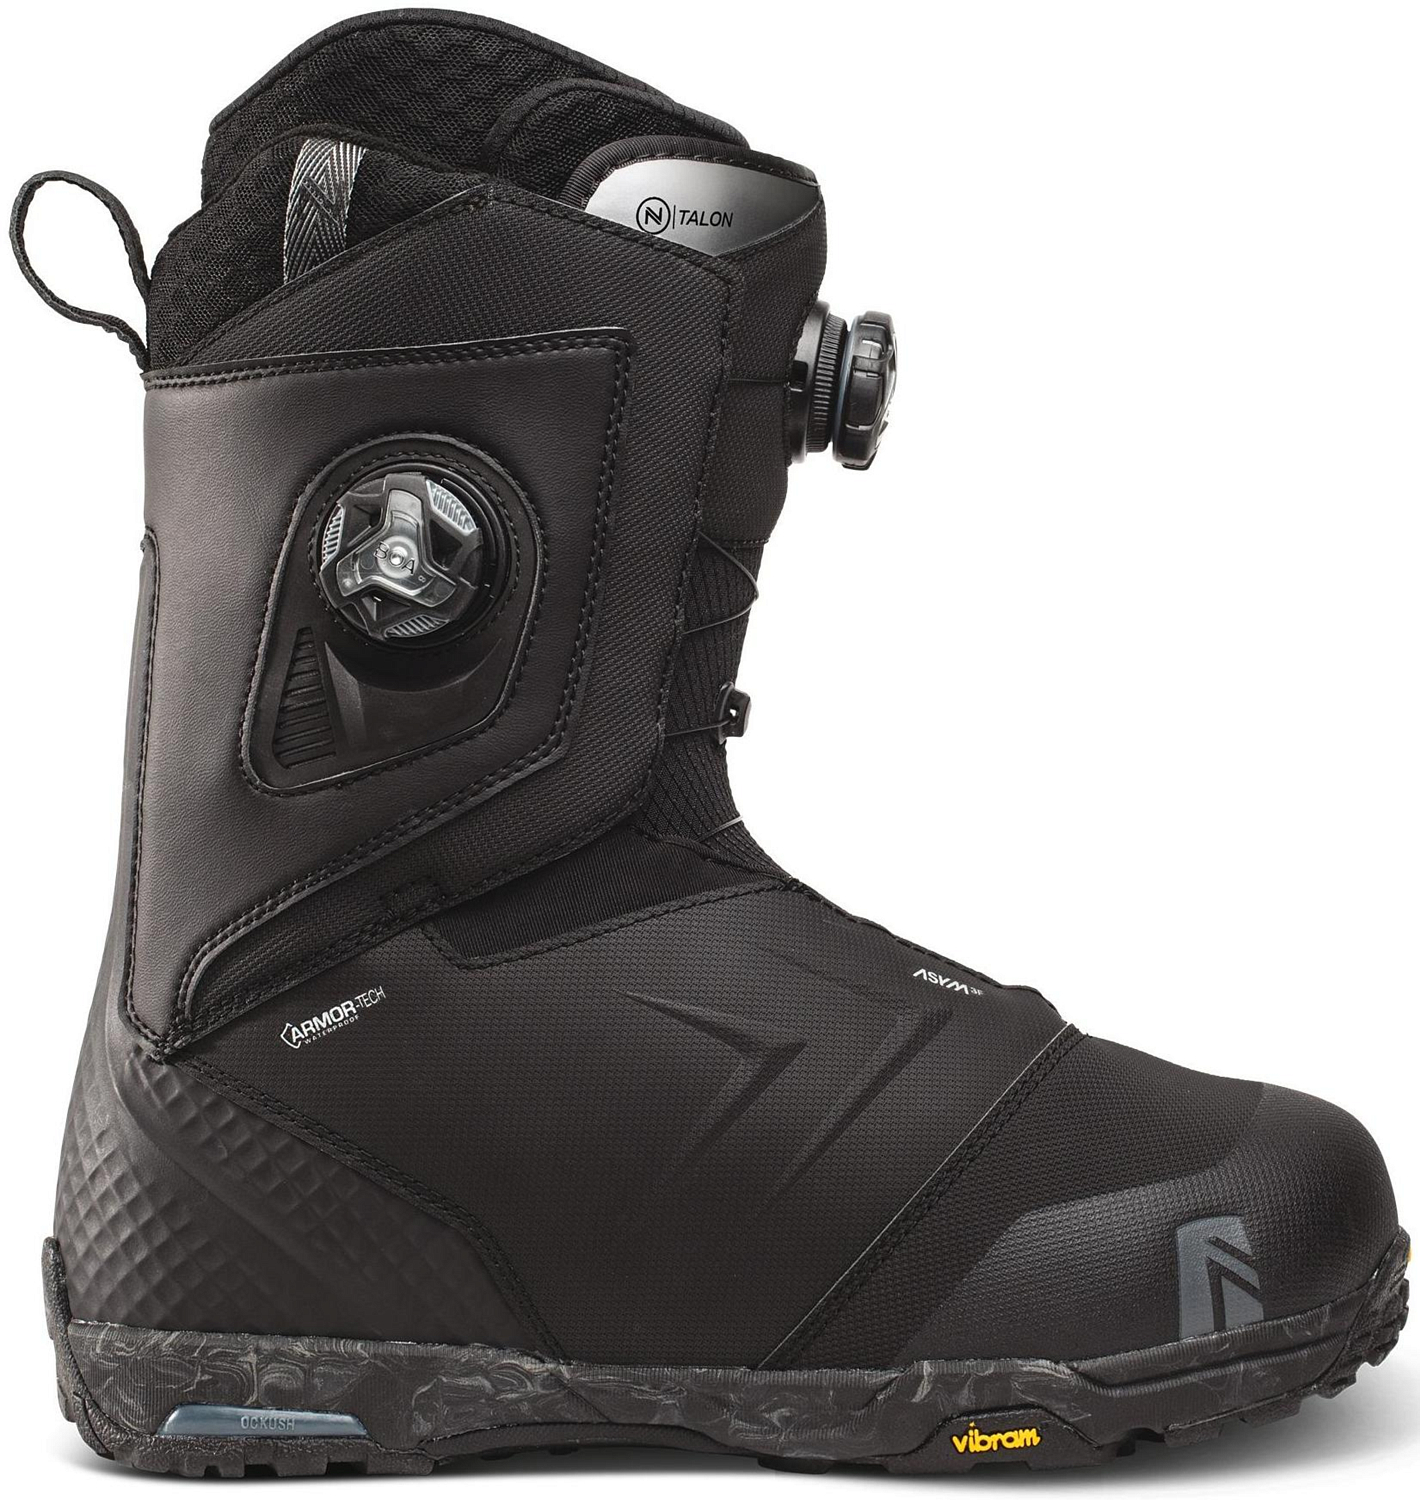 Ботинки для сноуборда NIDECKER 2020-21 Talon Black